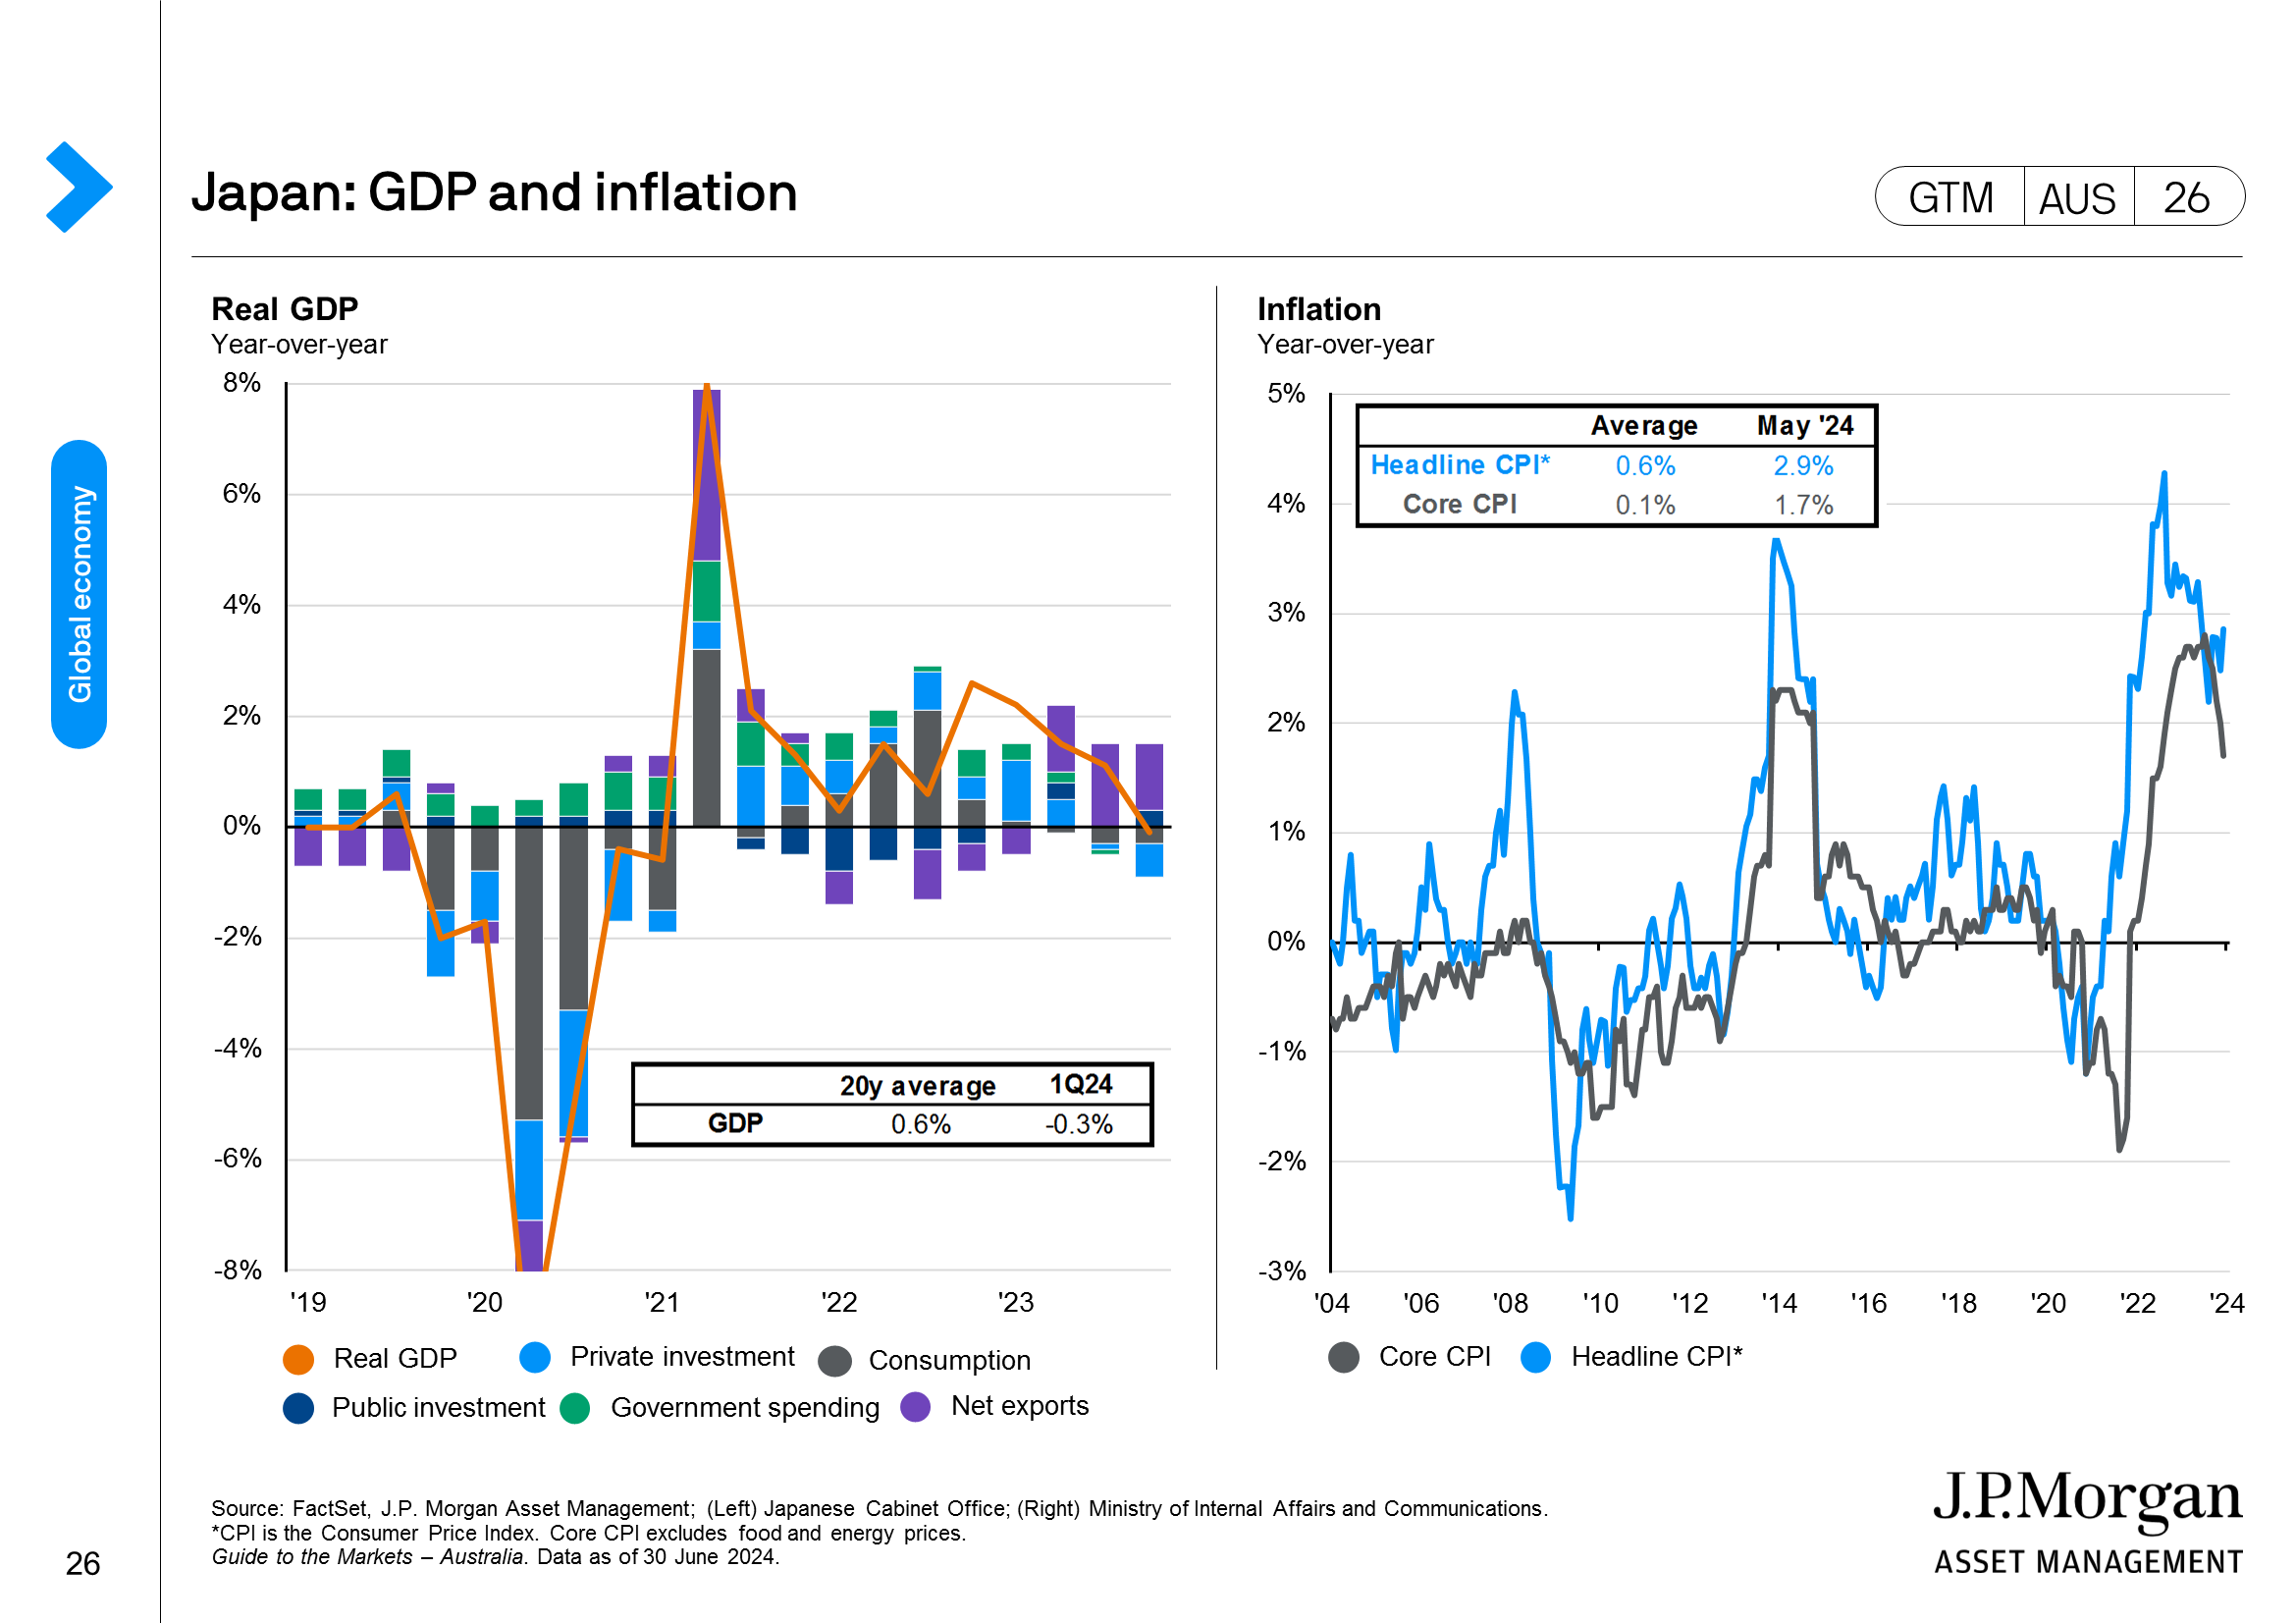 Eurozone: Growth indicators